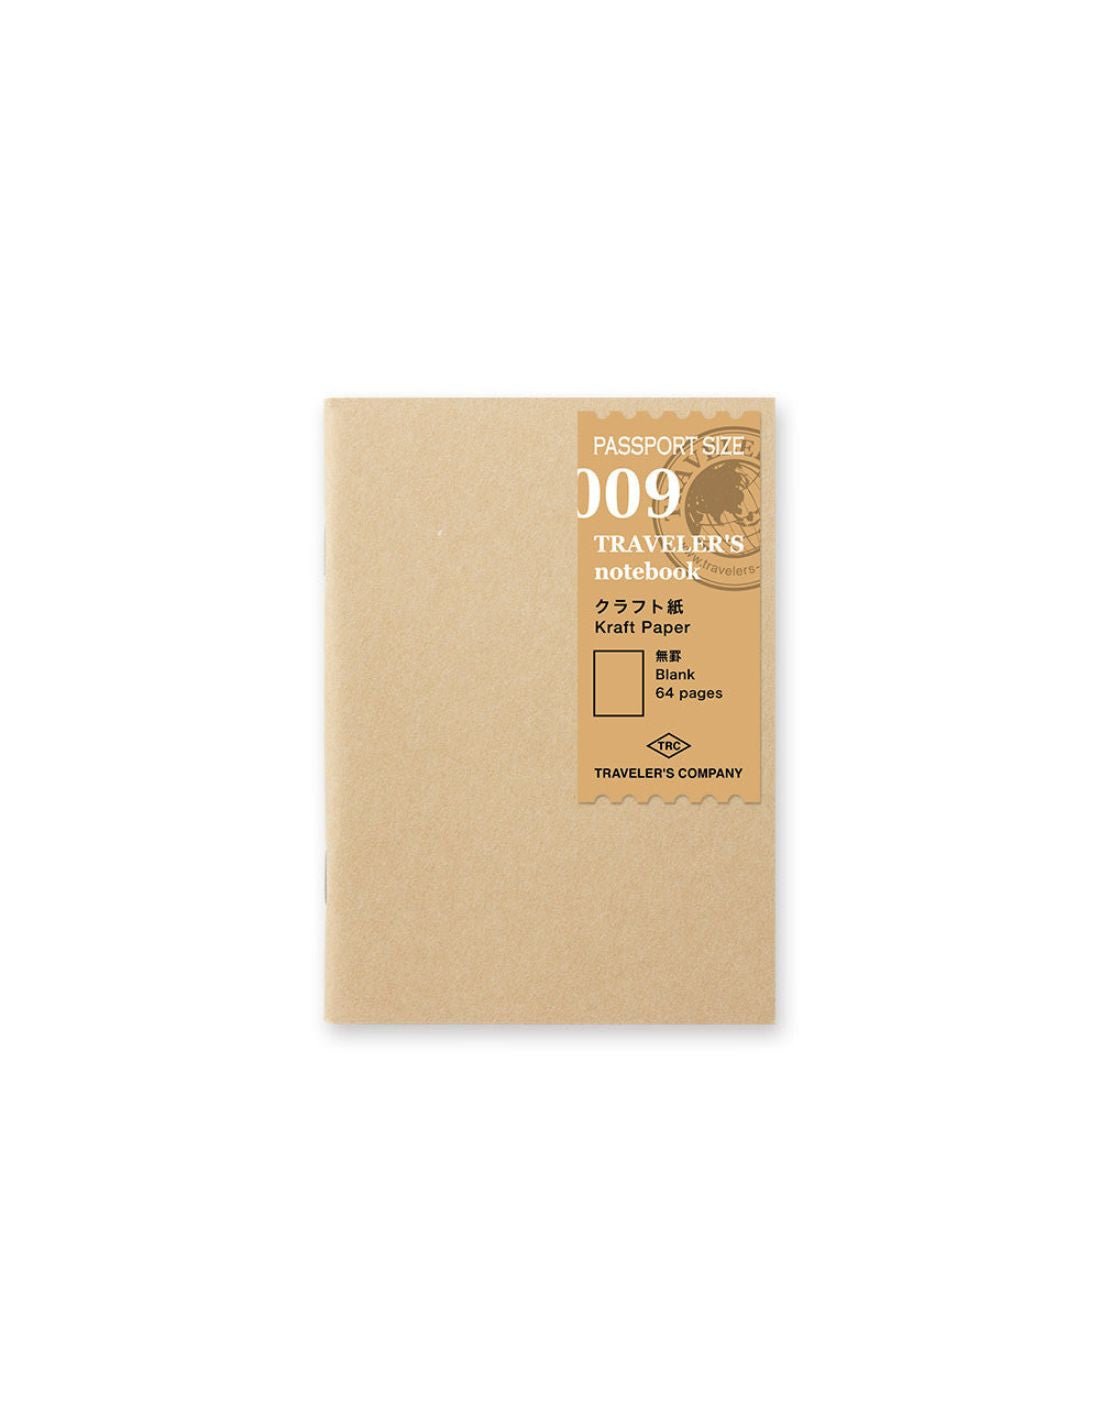 TRAVELER'S notebook 009 - carnet papier kraft (passport size) - TN Passport size - Uni - 4902805143738